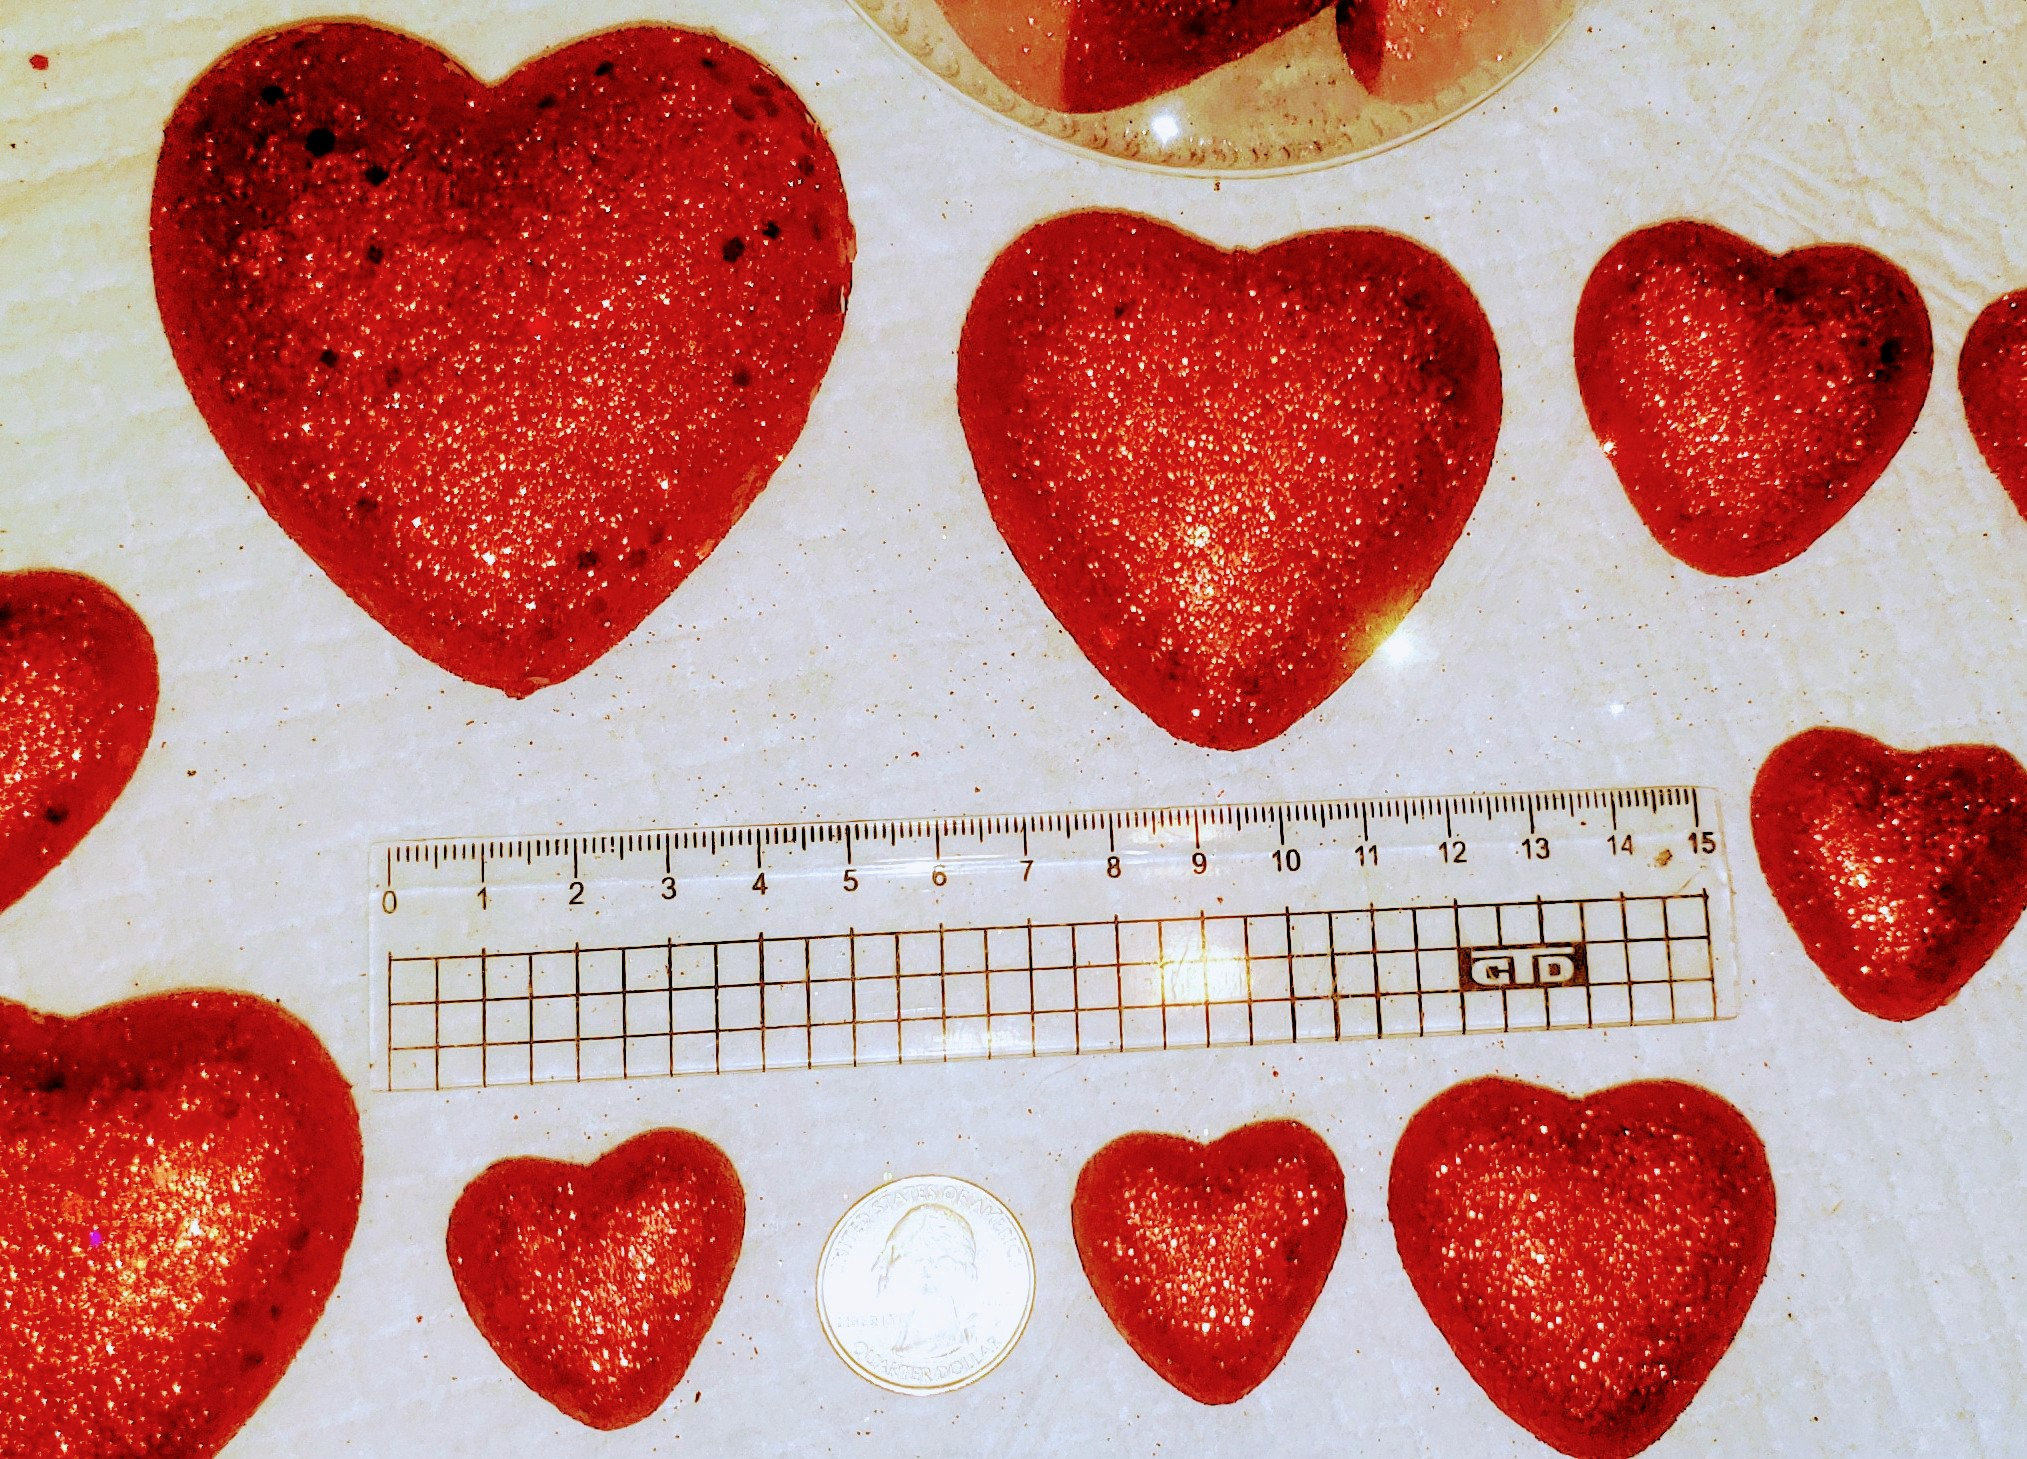 10 Glitter Foam Open Heart Decoration [HV907824] 